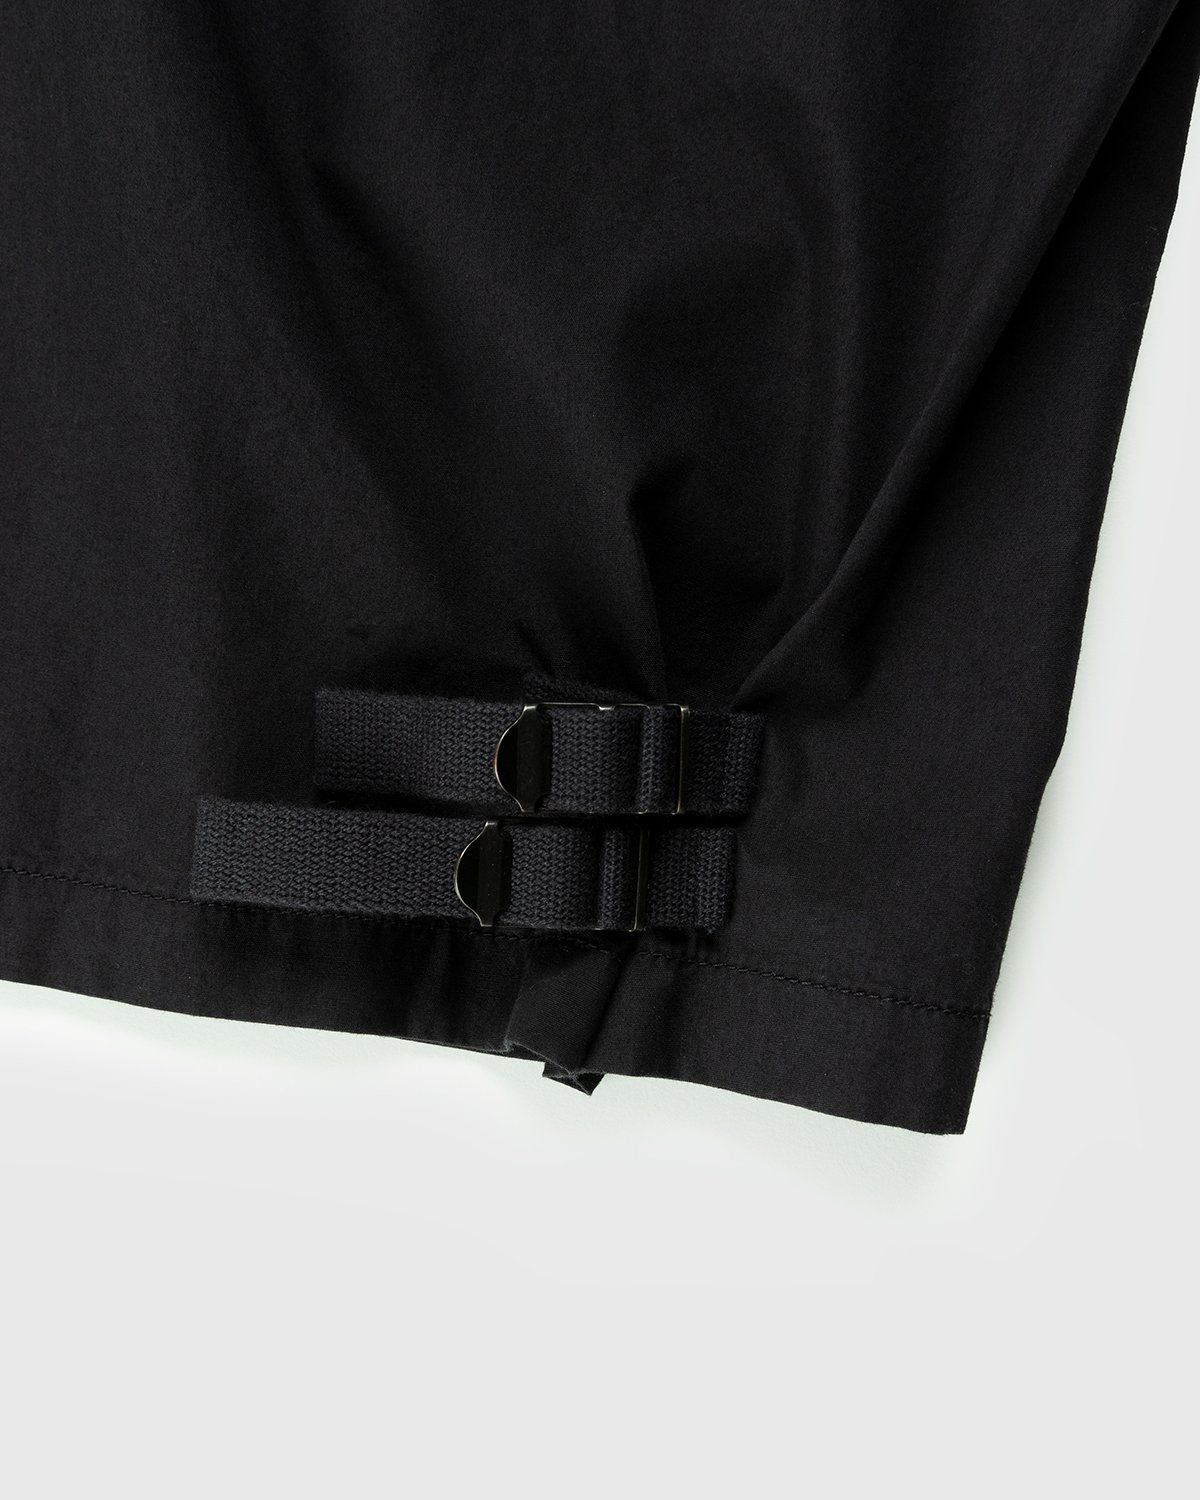 Lemaire – Shirt Blouson Black - Image 5